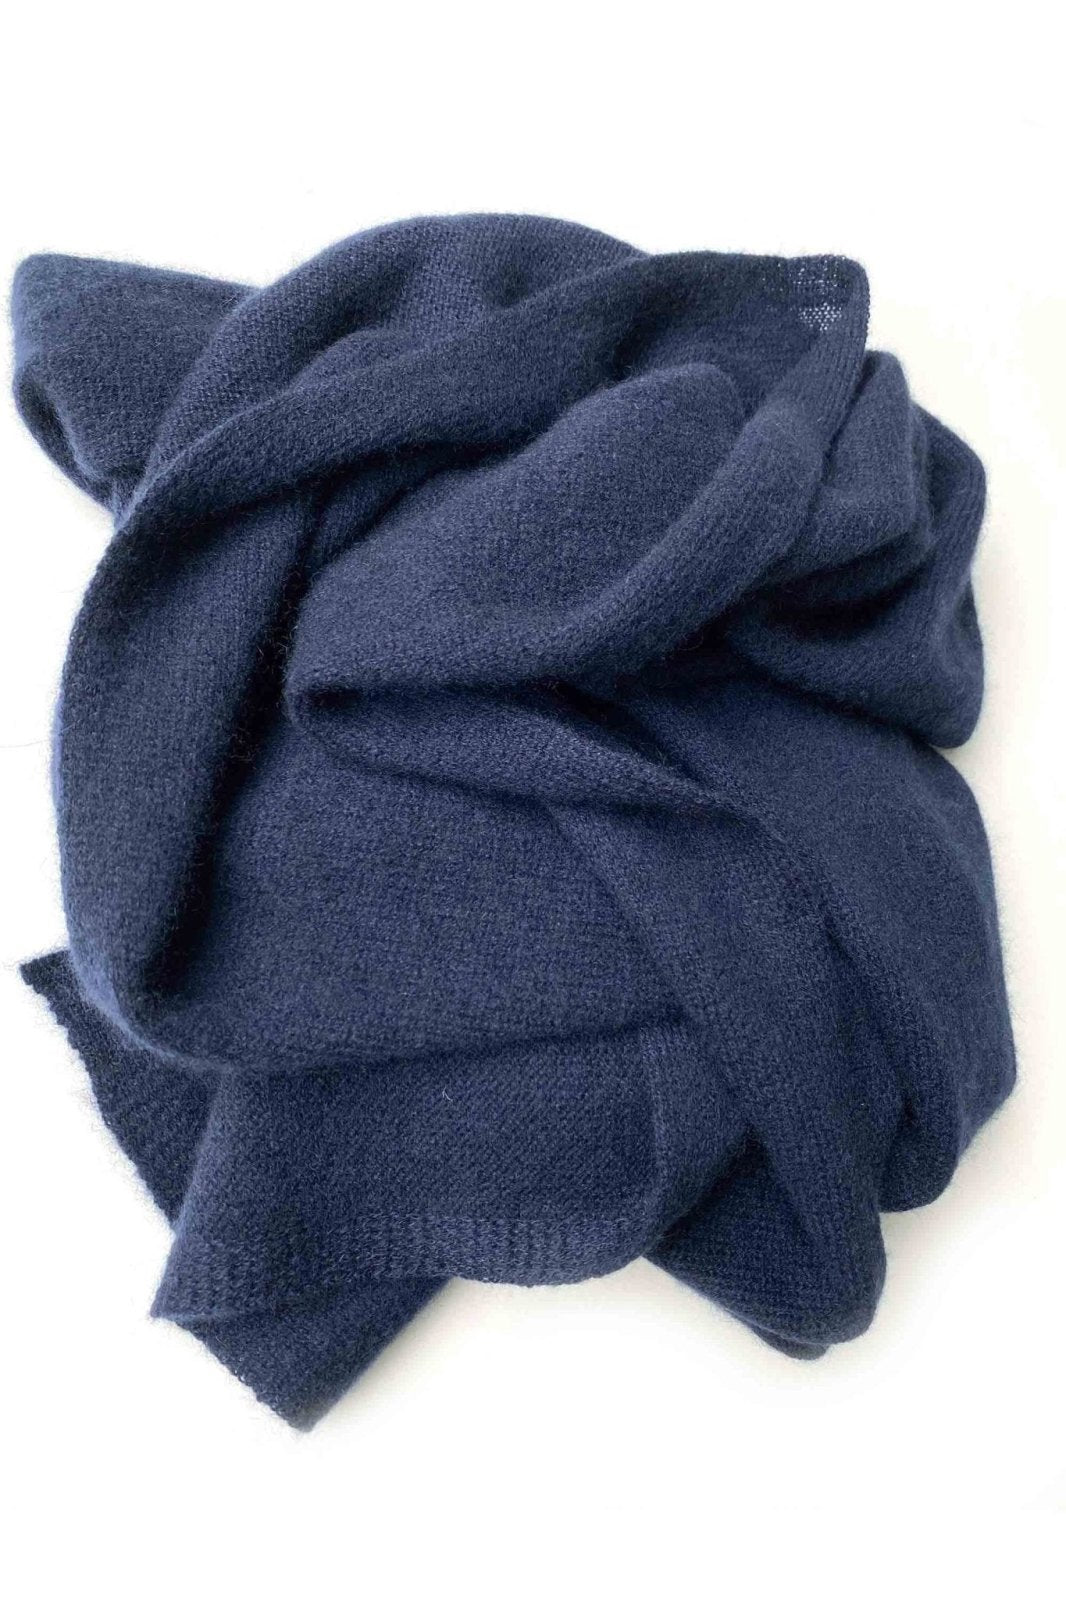 Unisex cashmere scarf in navy - SEMON Cashmere